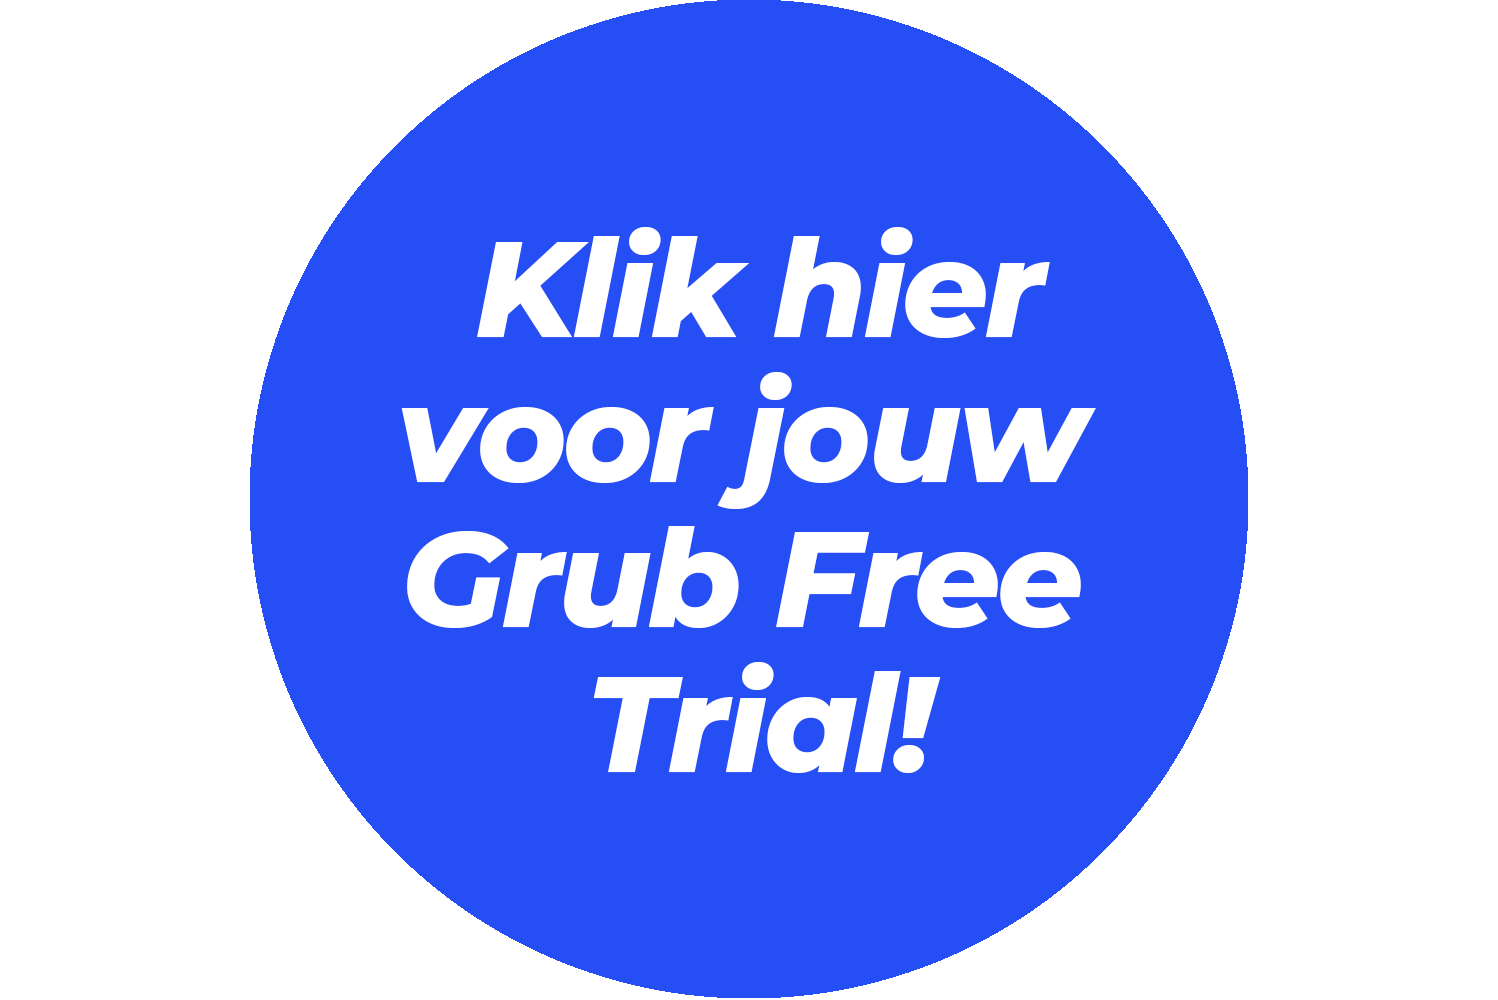 Klik hier voor jouw Grub free trial